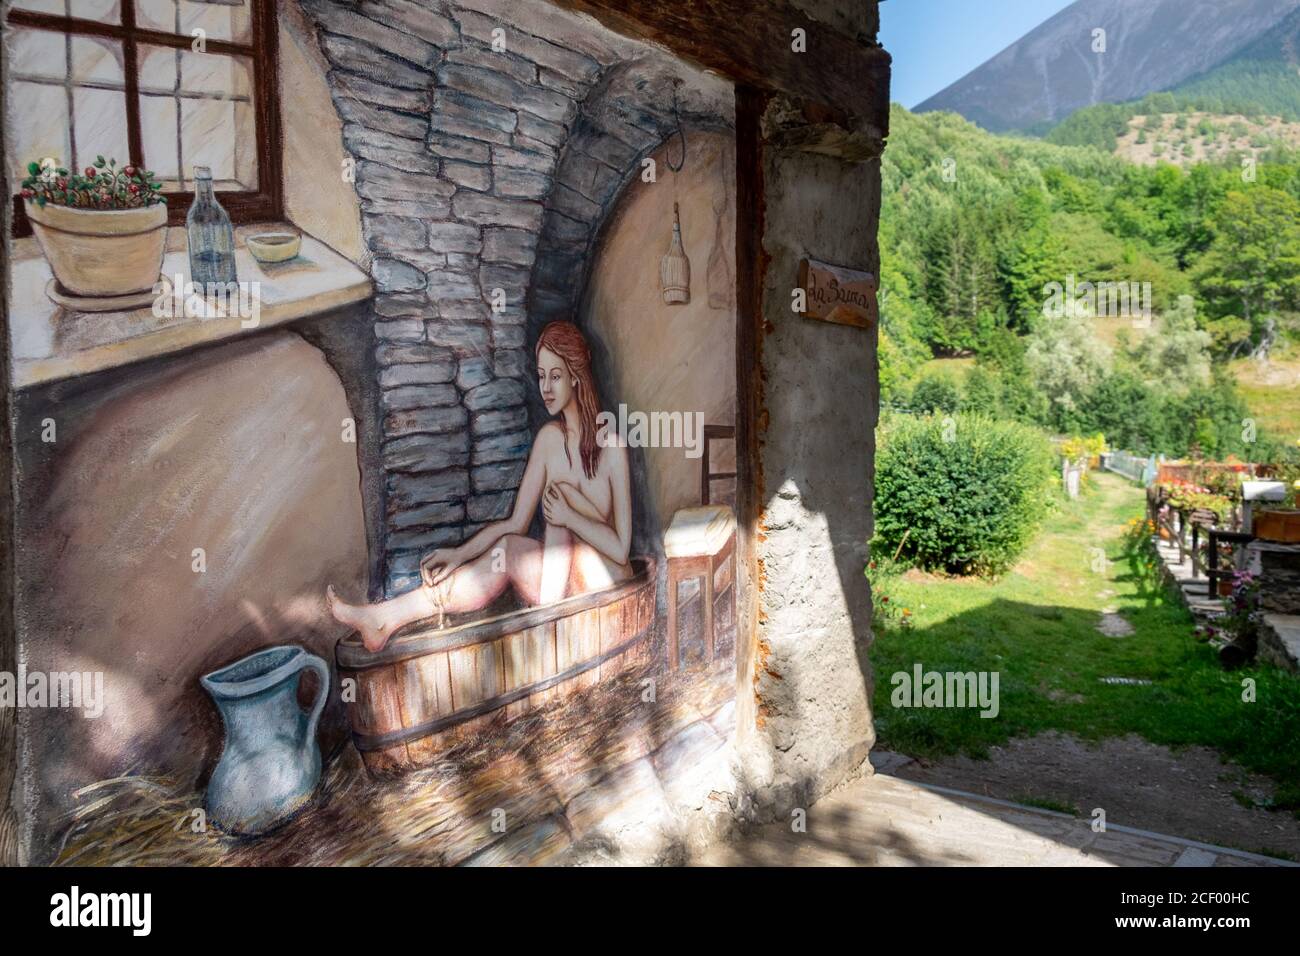 Murale dipinto di una donna che bagna in una vasca da bagno nel piccolo villaggio di Usseaux, Piemonte, Italia Foto Stock